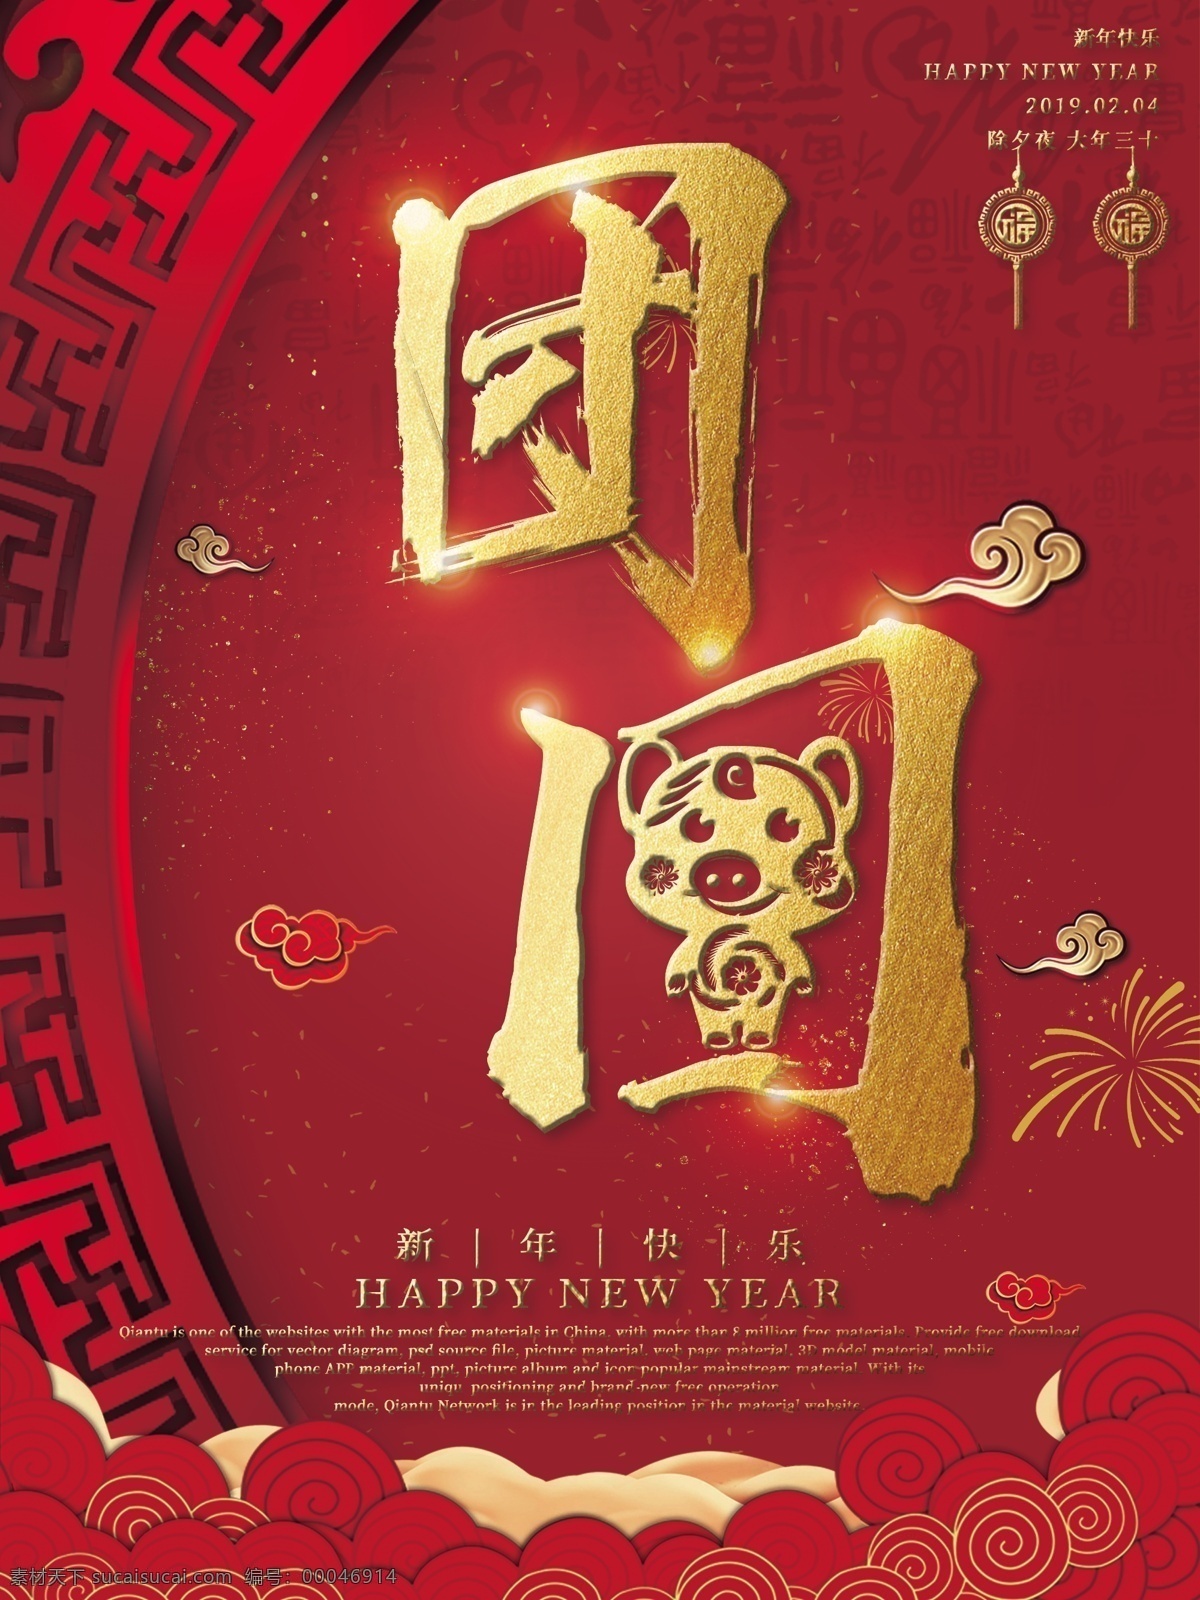 原创 简约 创意 中 国风 过年 主题 系列 海报 中国风 红色 金色 发光 细致 团圆 陪伴 回家 金猪 毛笔字